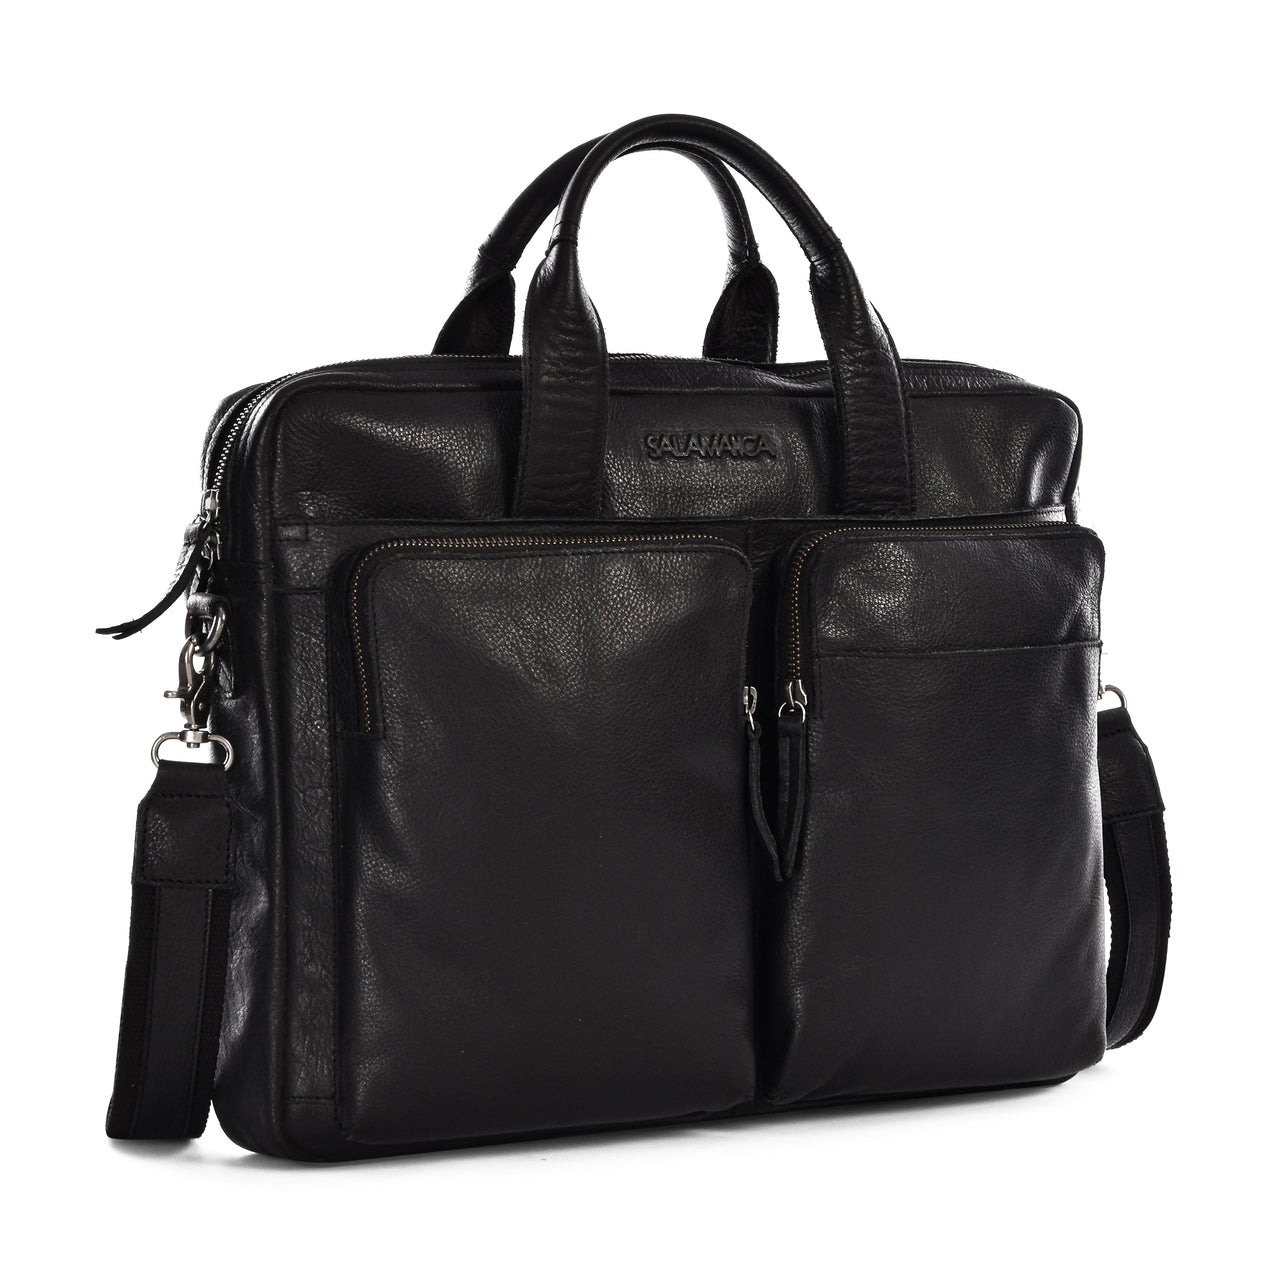 League Business Bag - Verico Black - Laptop Bags